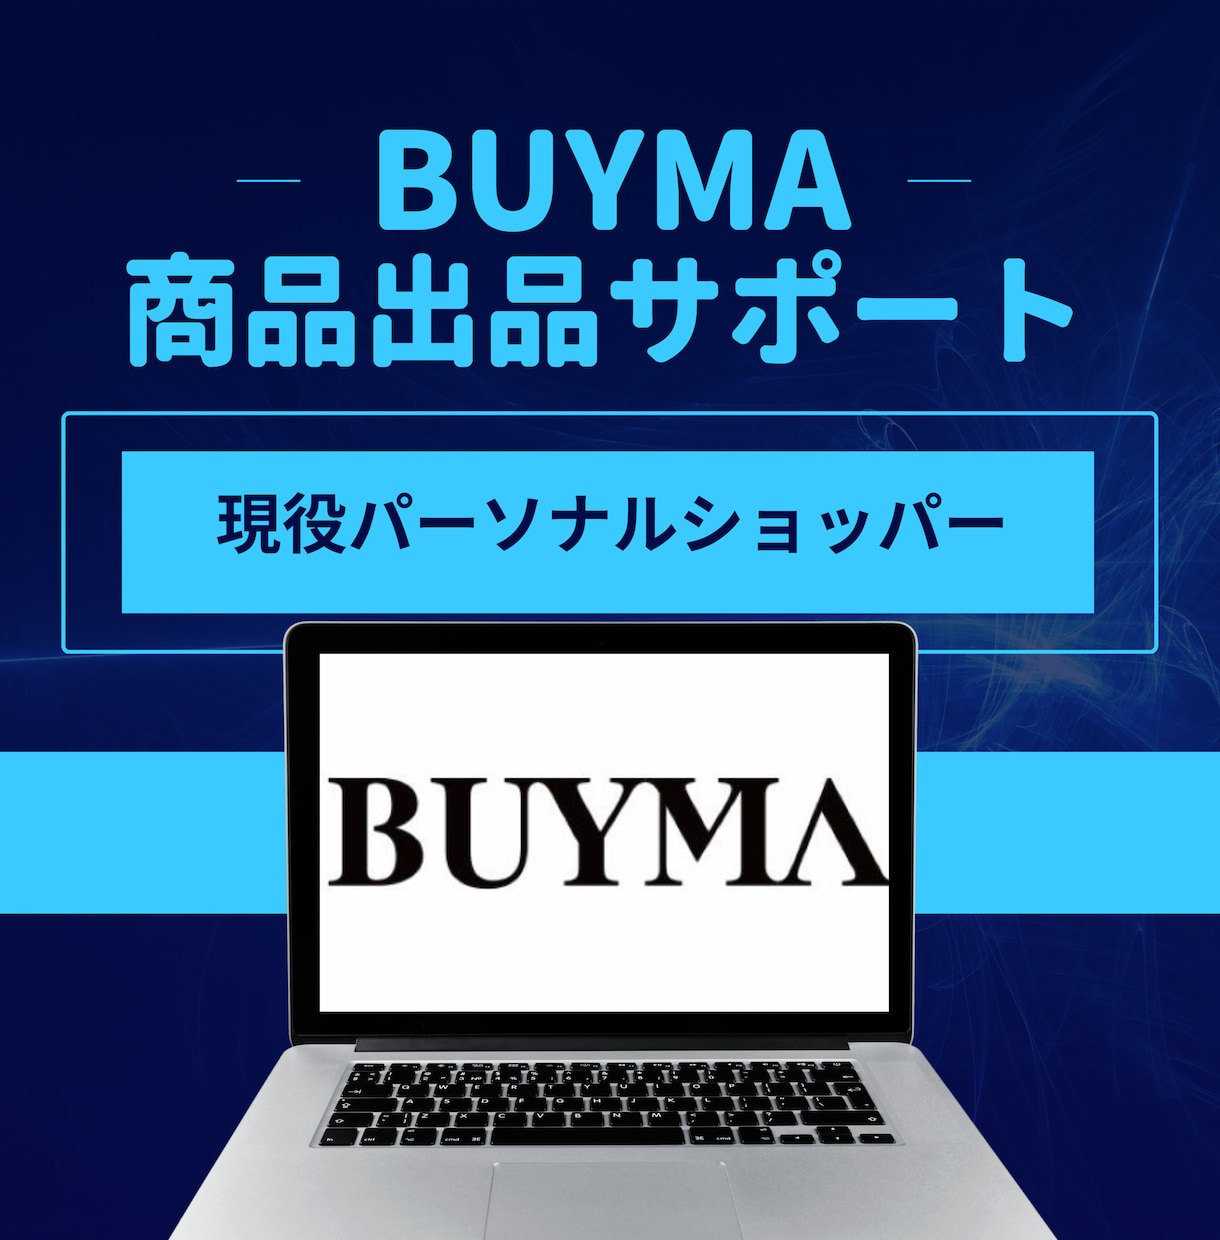 BUYMAへの面倒な出品作業をサポート致します 現役パーソナルショッパーが出品作業をお手伝いさせて頂きます。 イメージ1